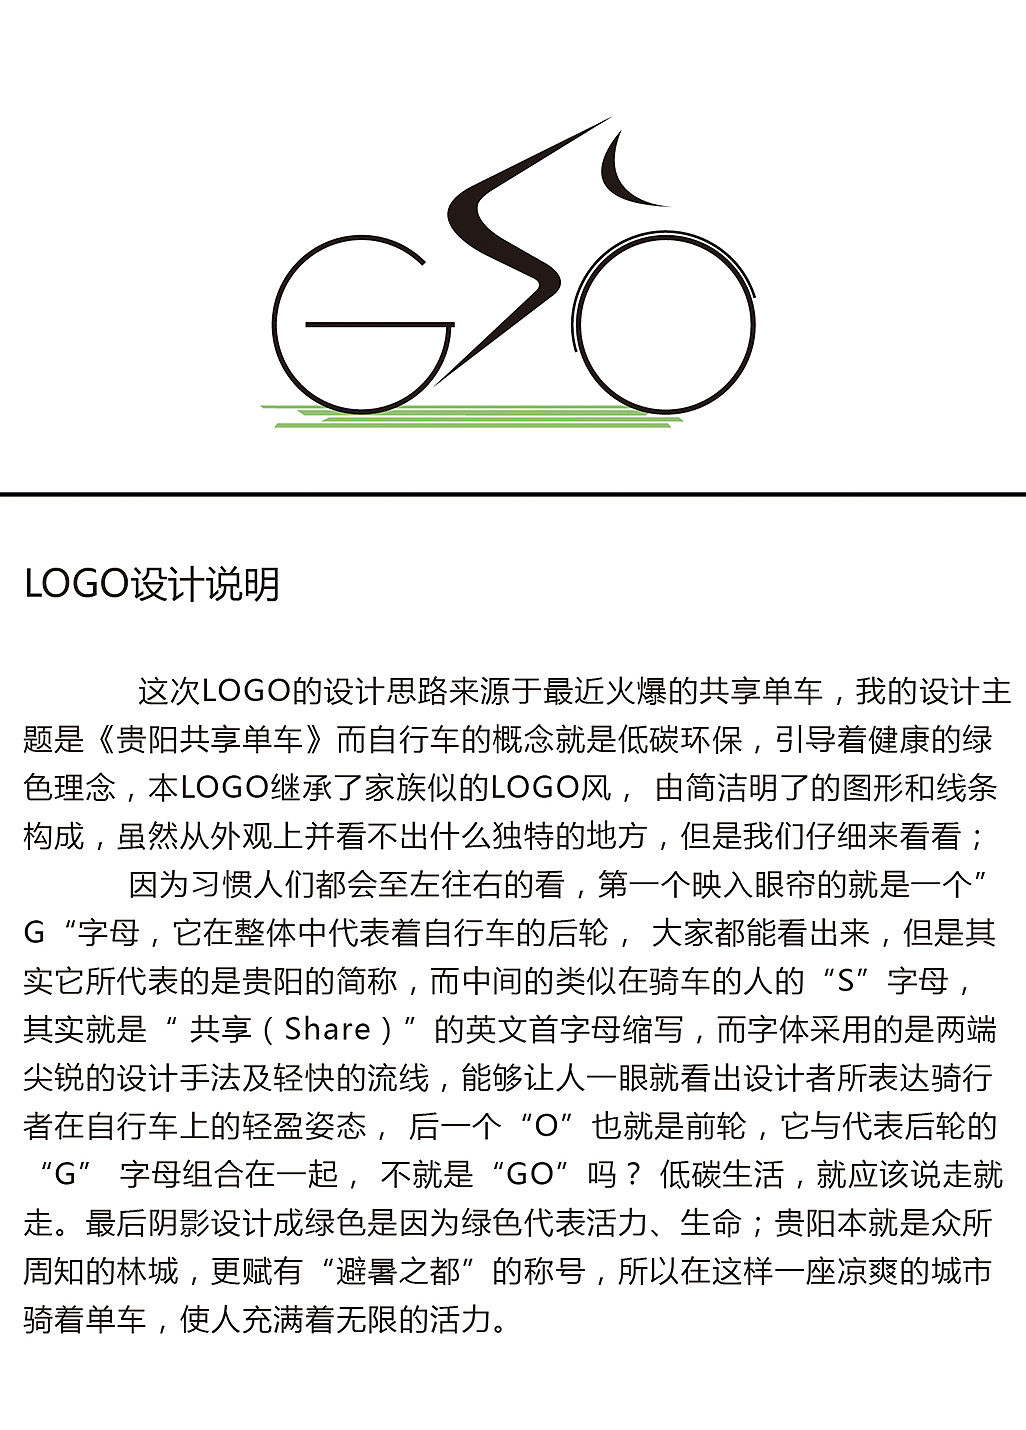 贵阳共享单车logo设计